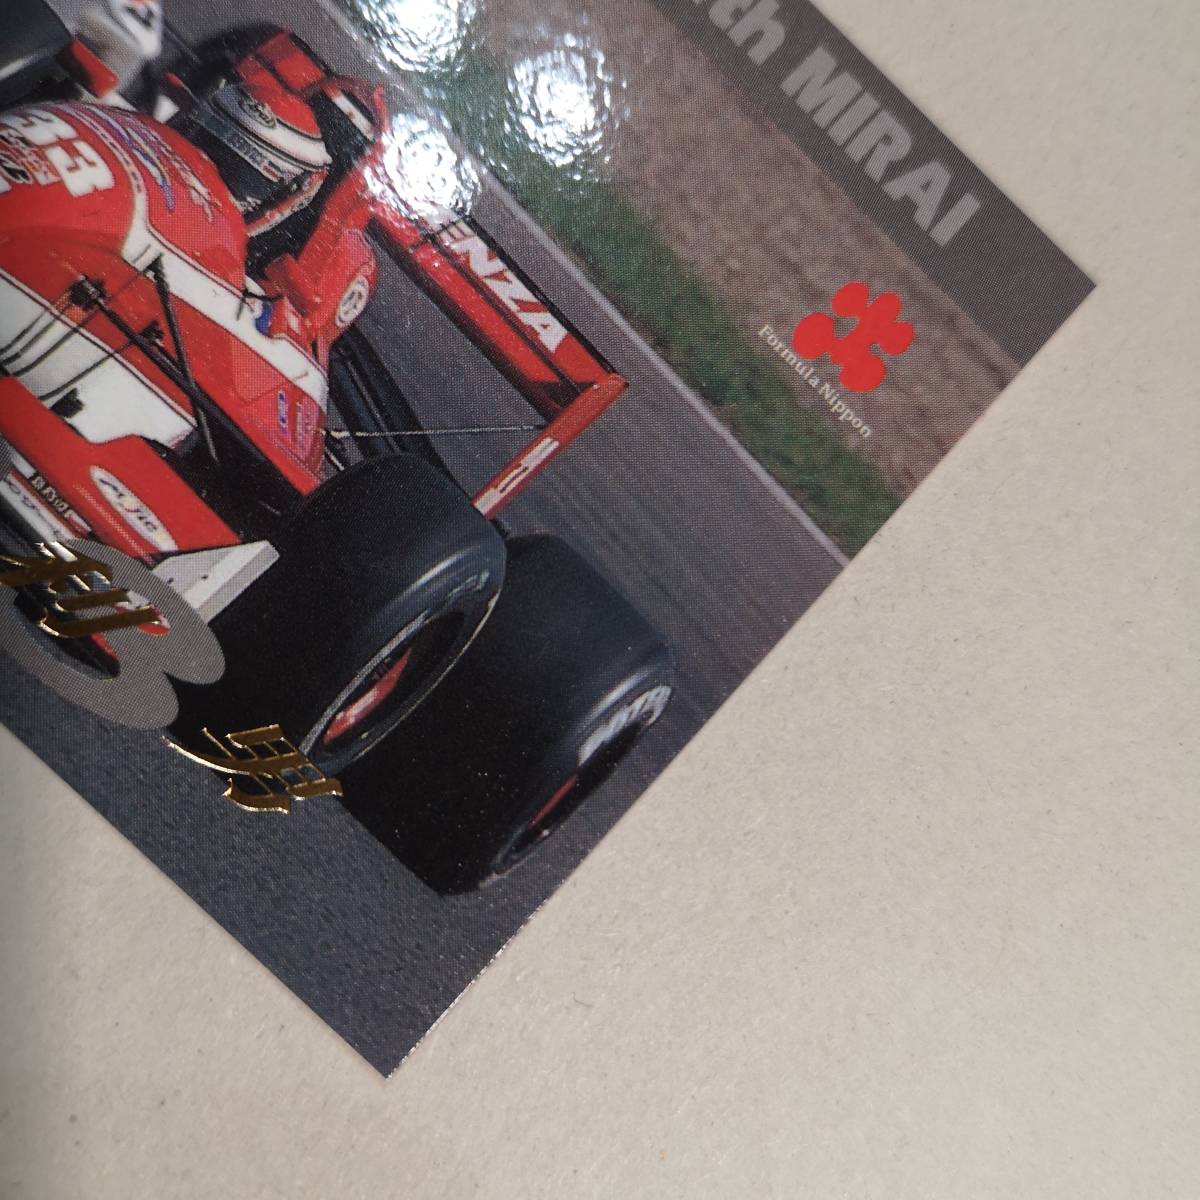 ◆97 Formula Nippon コレクションカード「KAMOME SERVICE with MIRAI 鈴木利男」S-18◆エポック社 1997年/フォーミュラニッポン/CA車_画像3